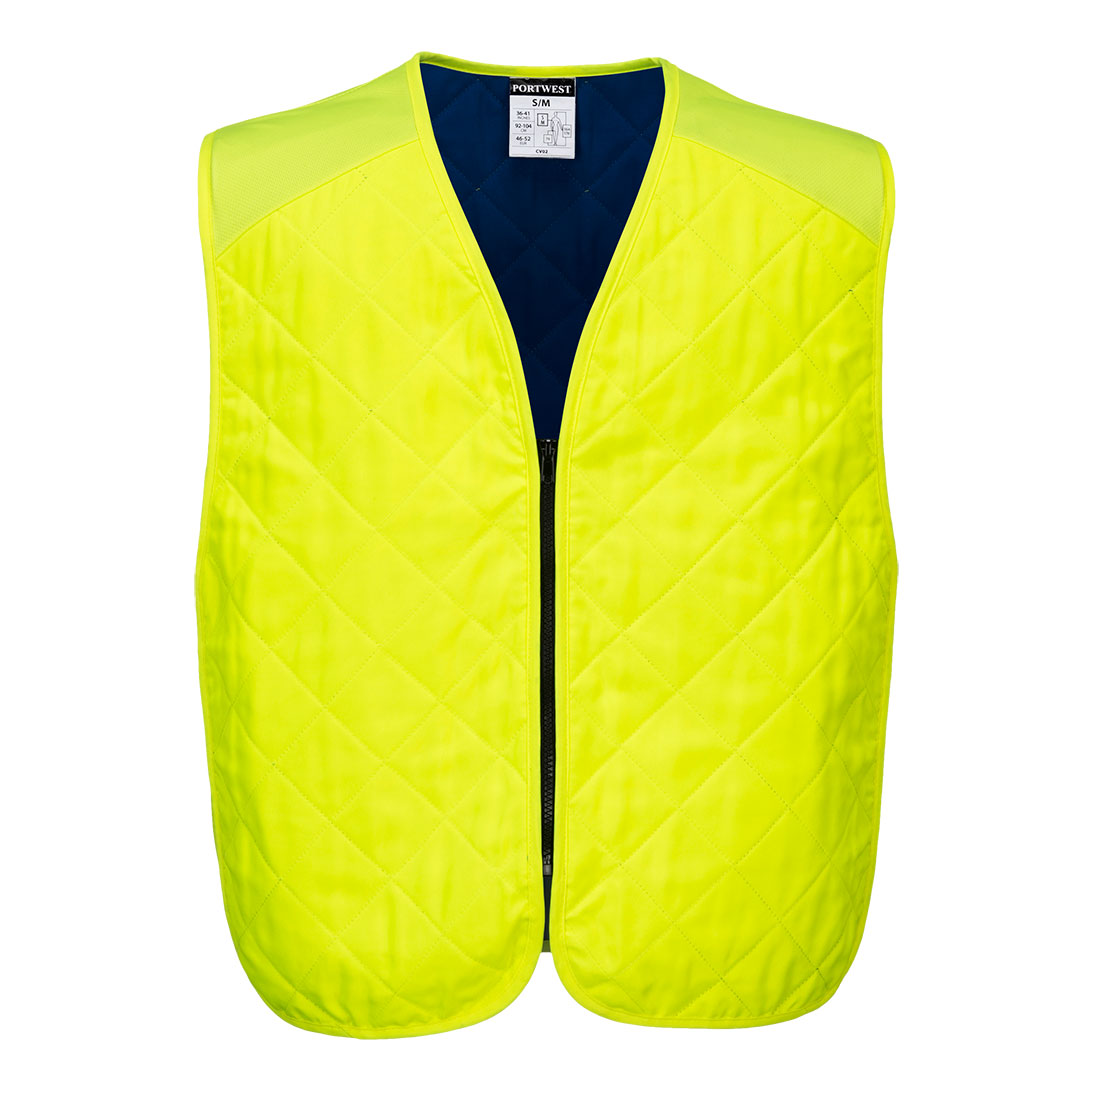 CV09 Portwest® Hi-Viz UV Blocking Cooling Vests